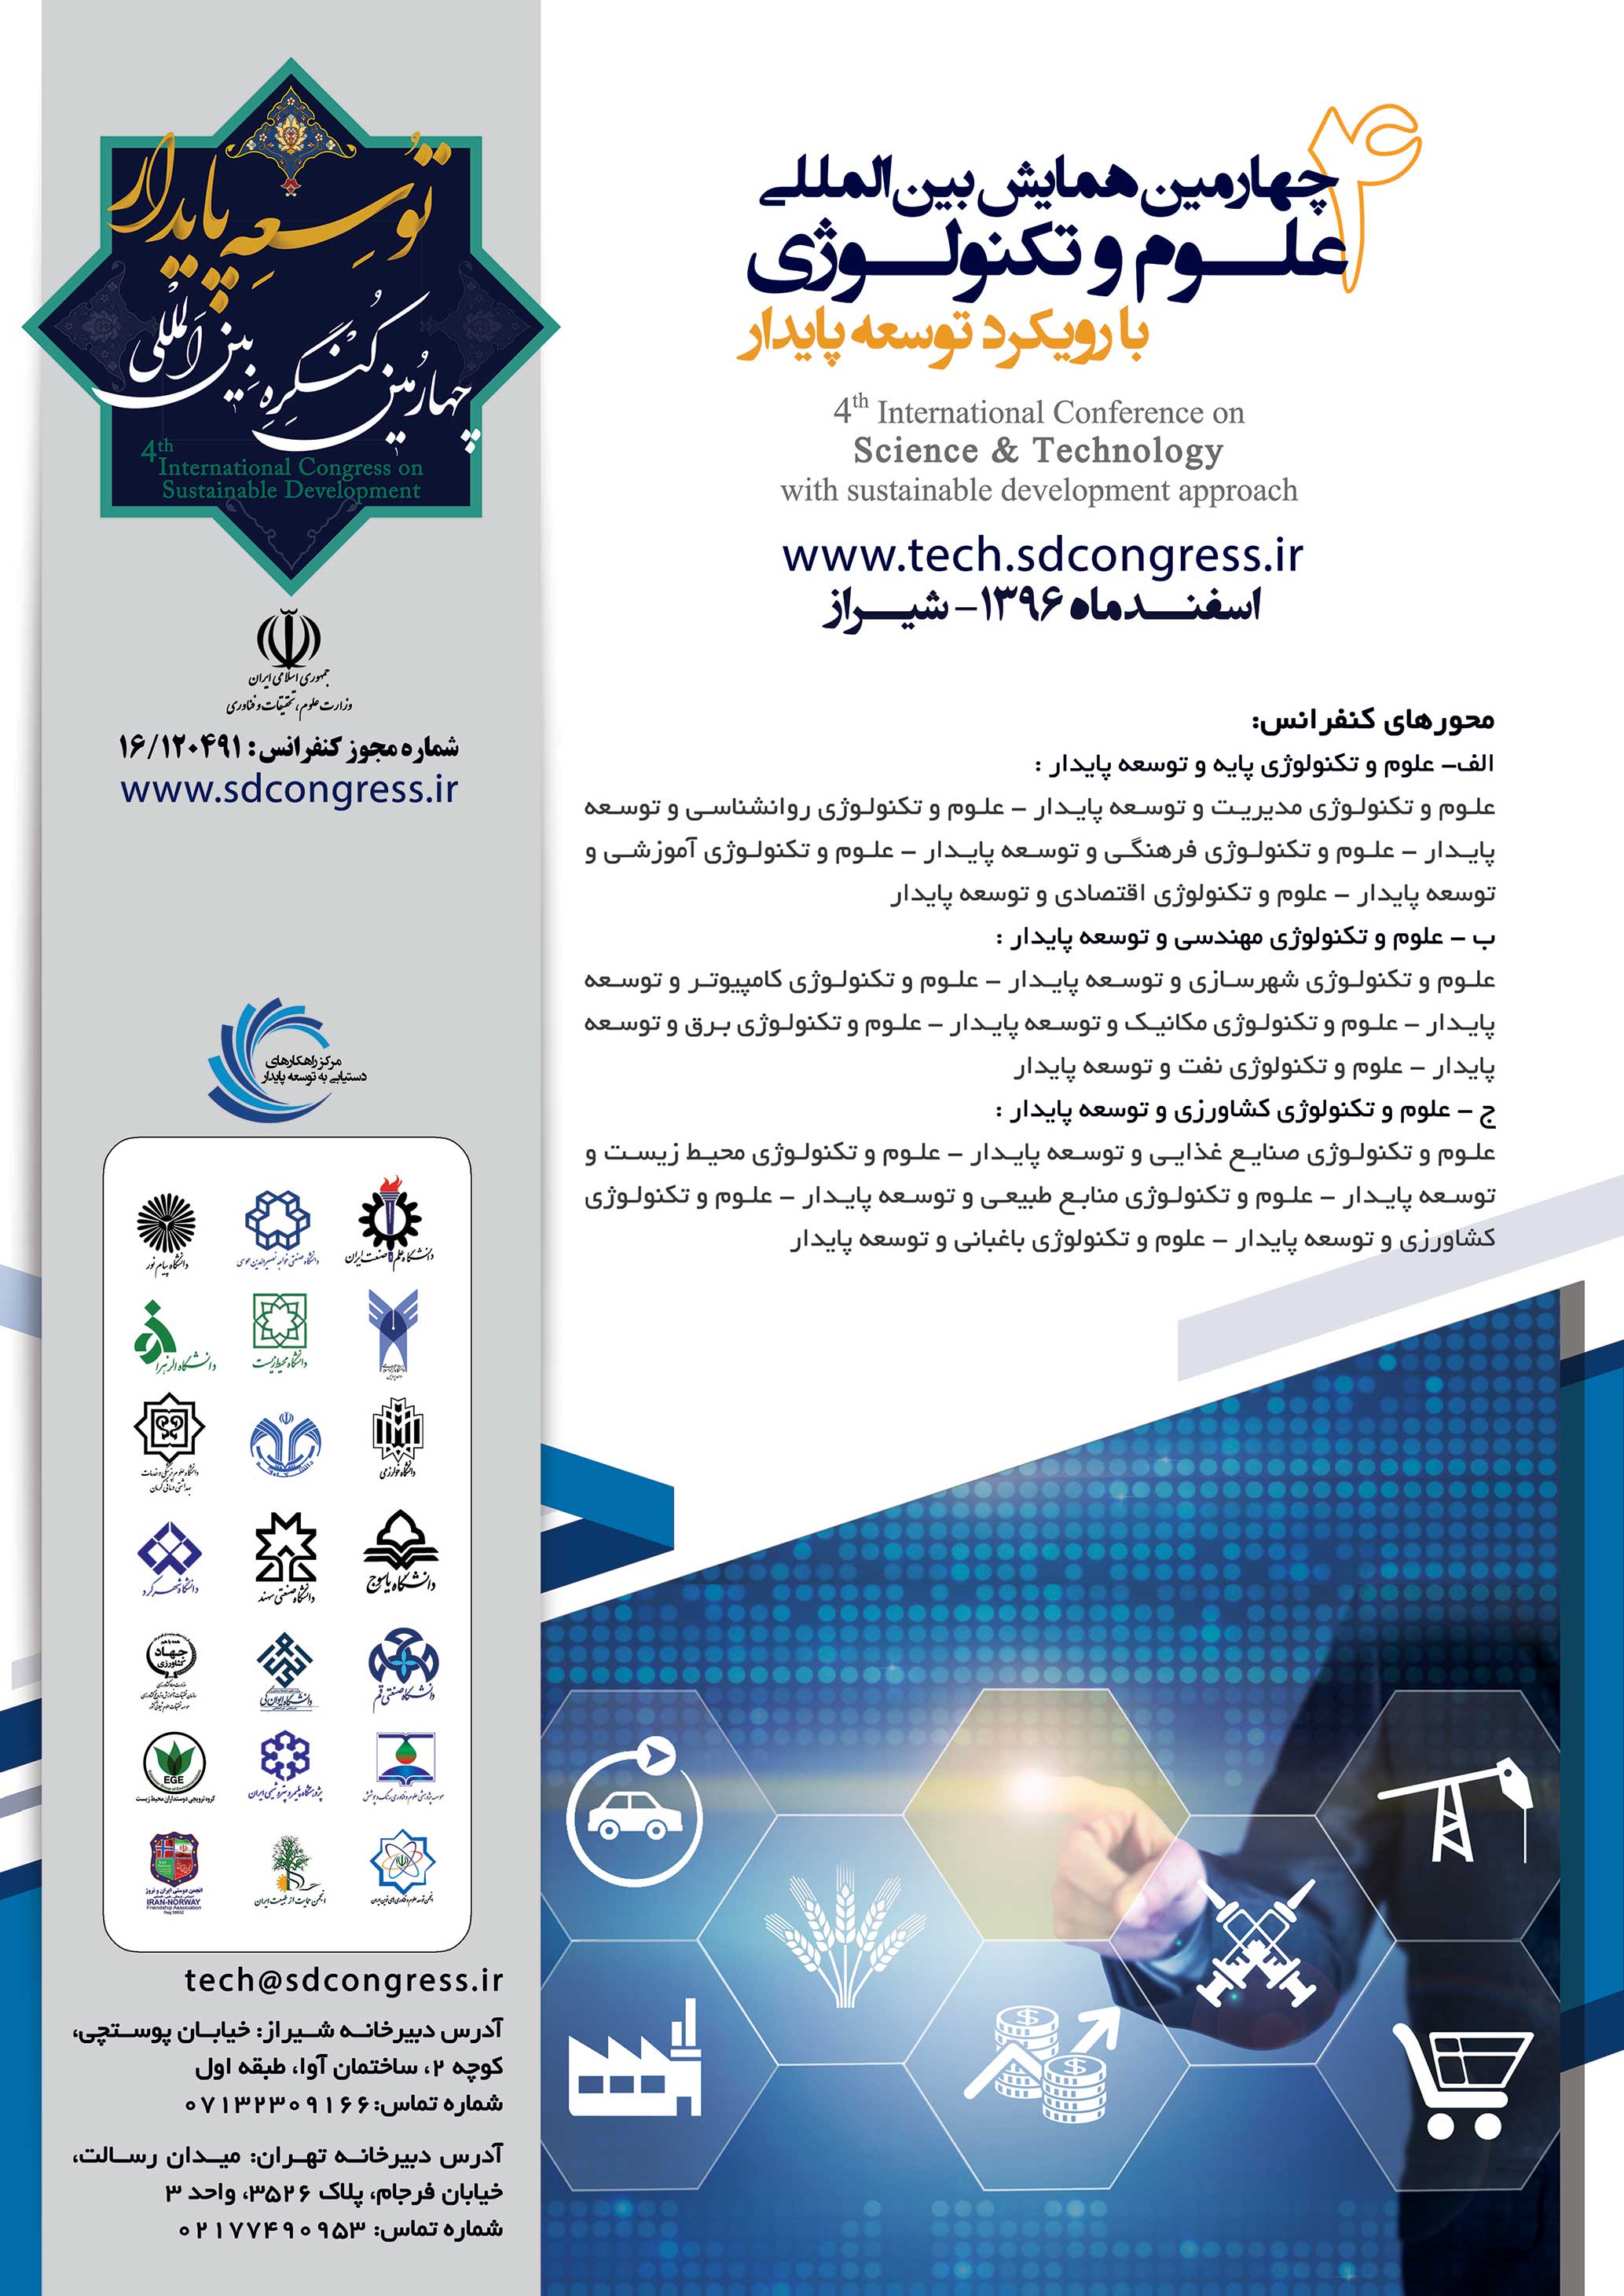 پوستر چهارمین همایش بین المللی علوم و تکنولوژی